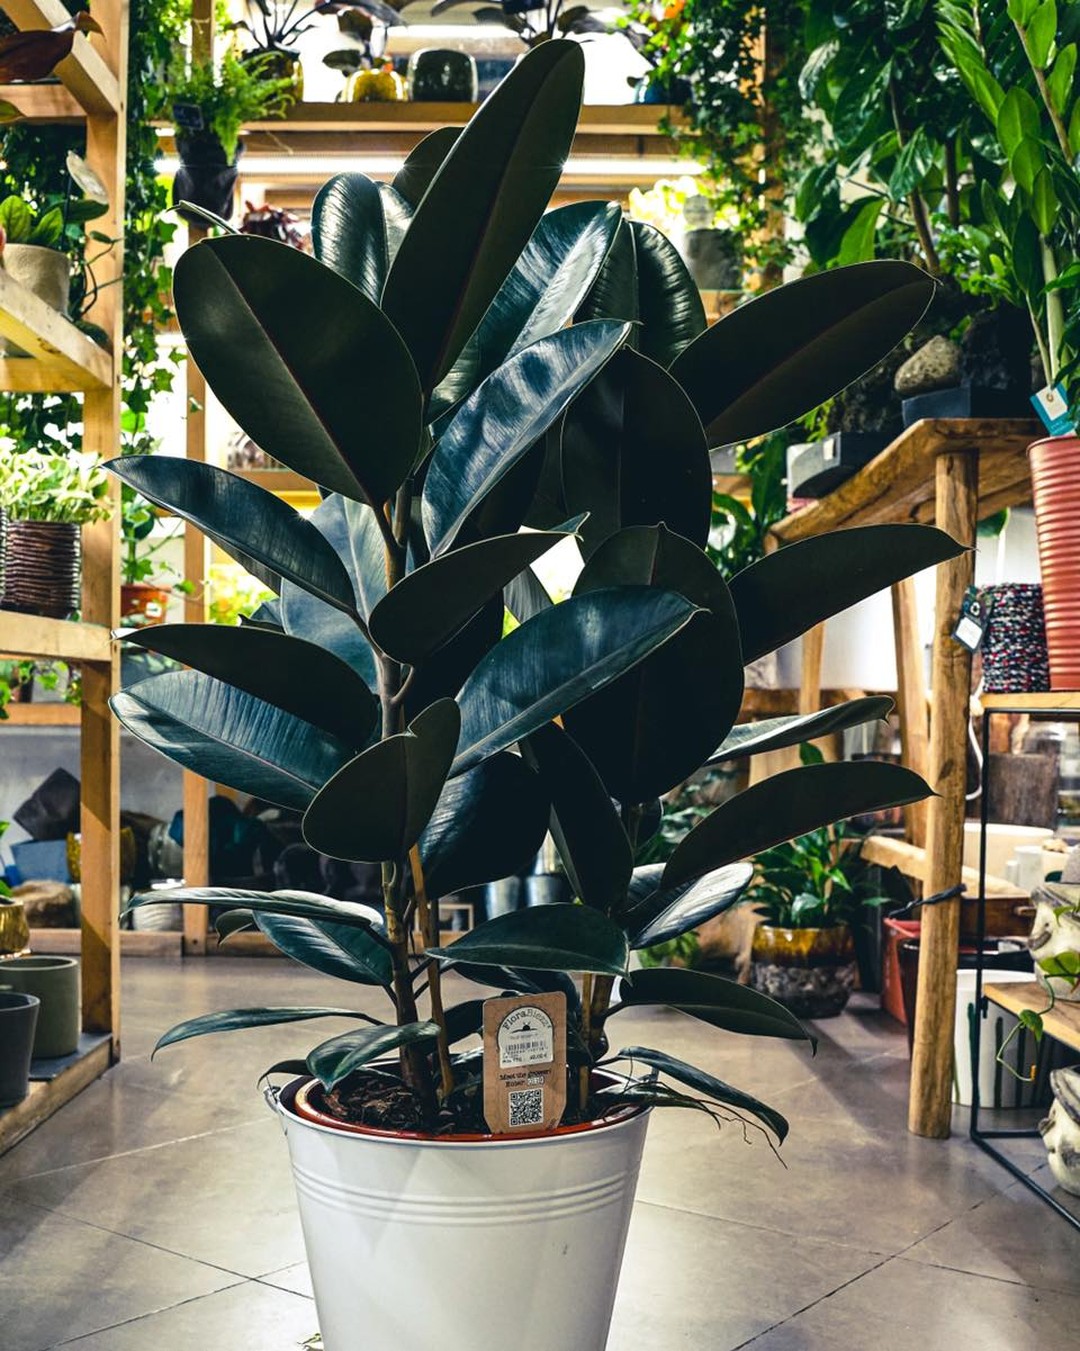 Notre plante de la semaine : le Ficus Elastica Abidjan, il est originaire du Népal, de l'Assam ou de Birmanie . Cette plante tropicale possède un superbe feuillage d'un beau vert profond et peut atteindre 3m de hauteur !🌱
.
.
.
.
#bionac #ficuselastica #11eme #cabinetdecuriositesvegetales #jardinerie #plantsmakepeoplehappy